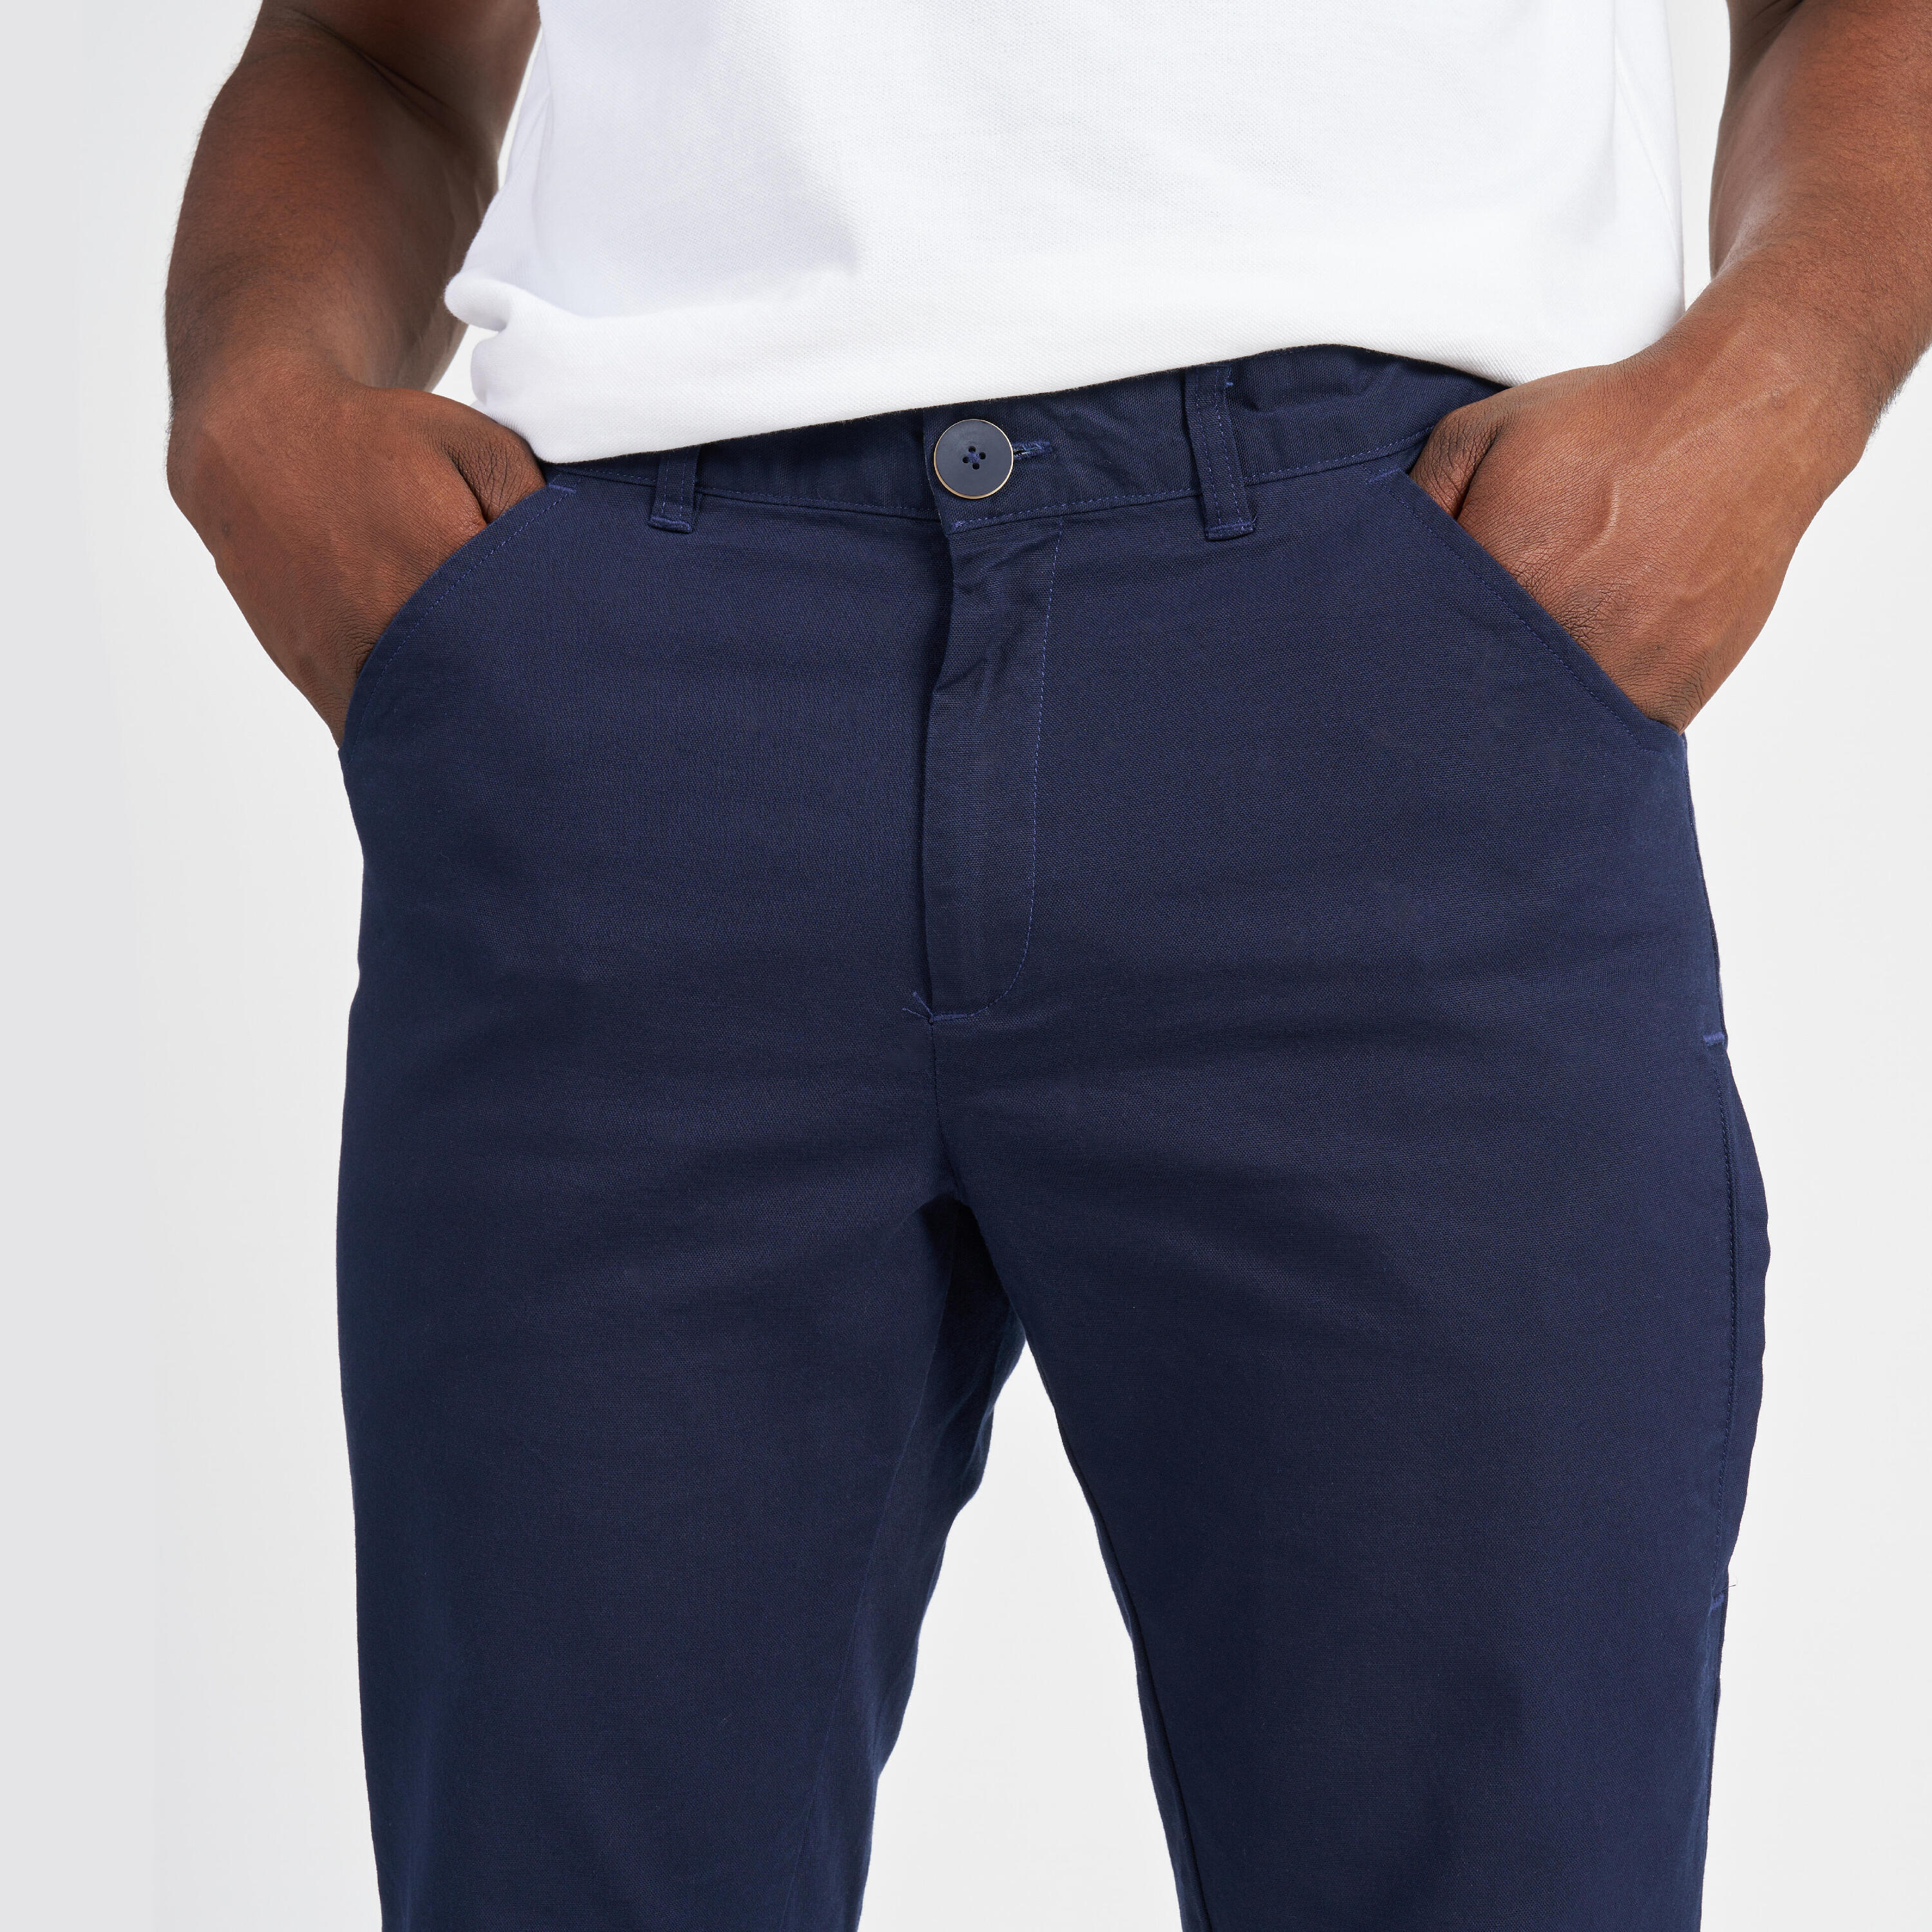 Men's sailing cotton trousers 100 navy blue 7/13